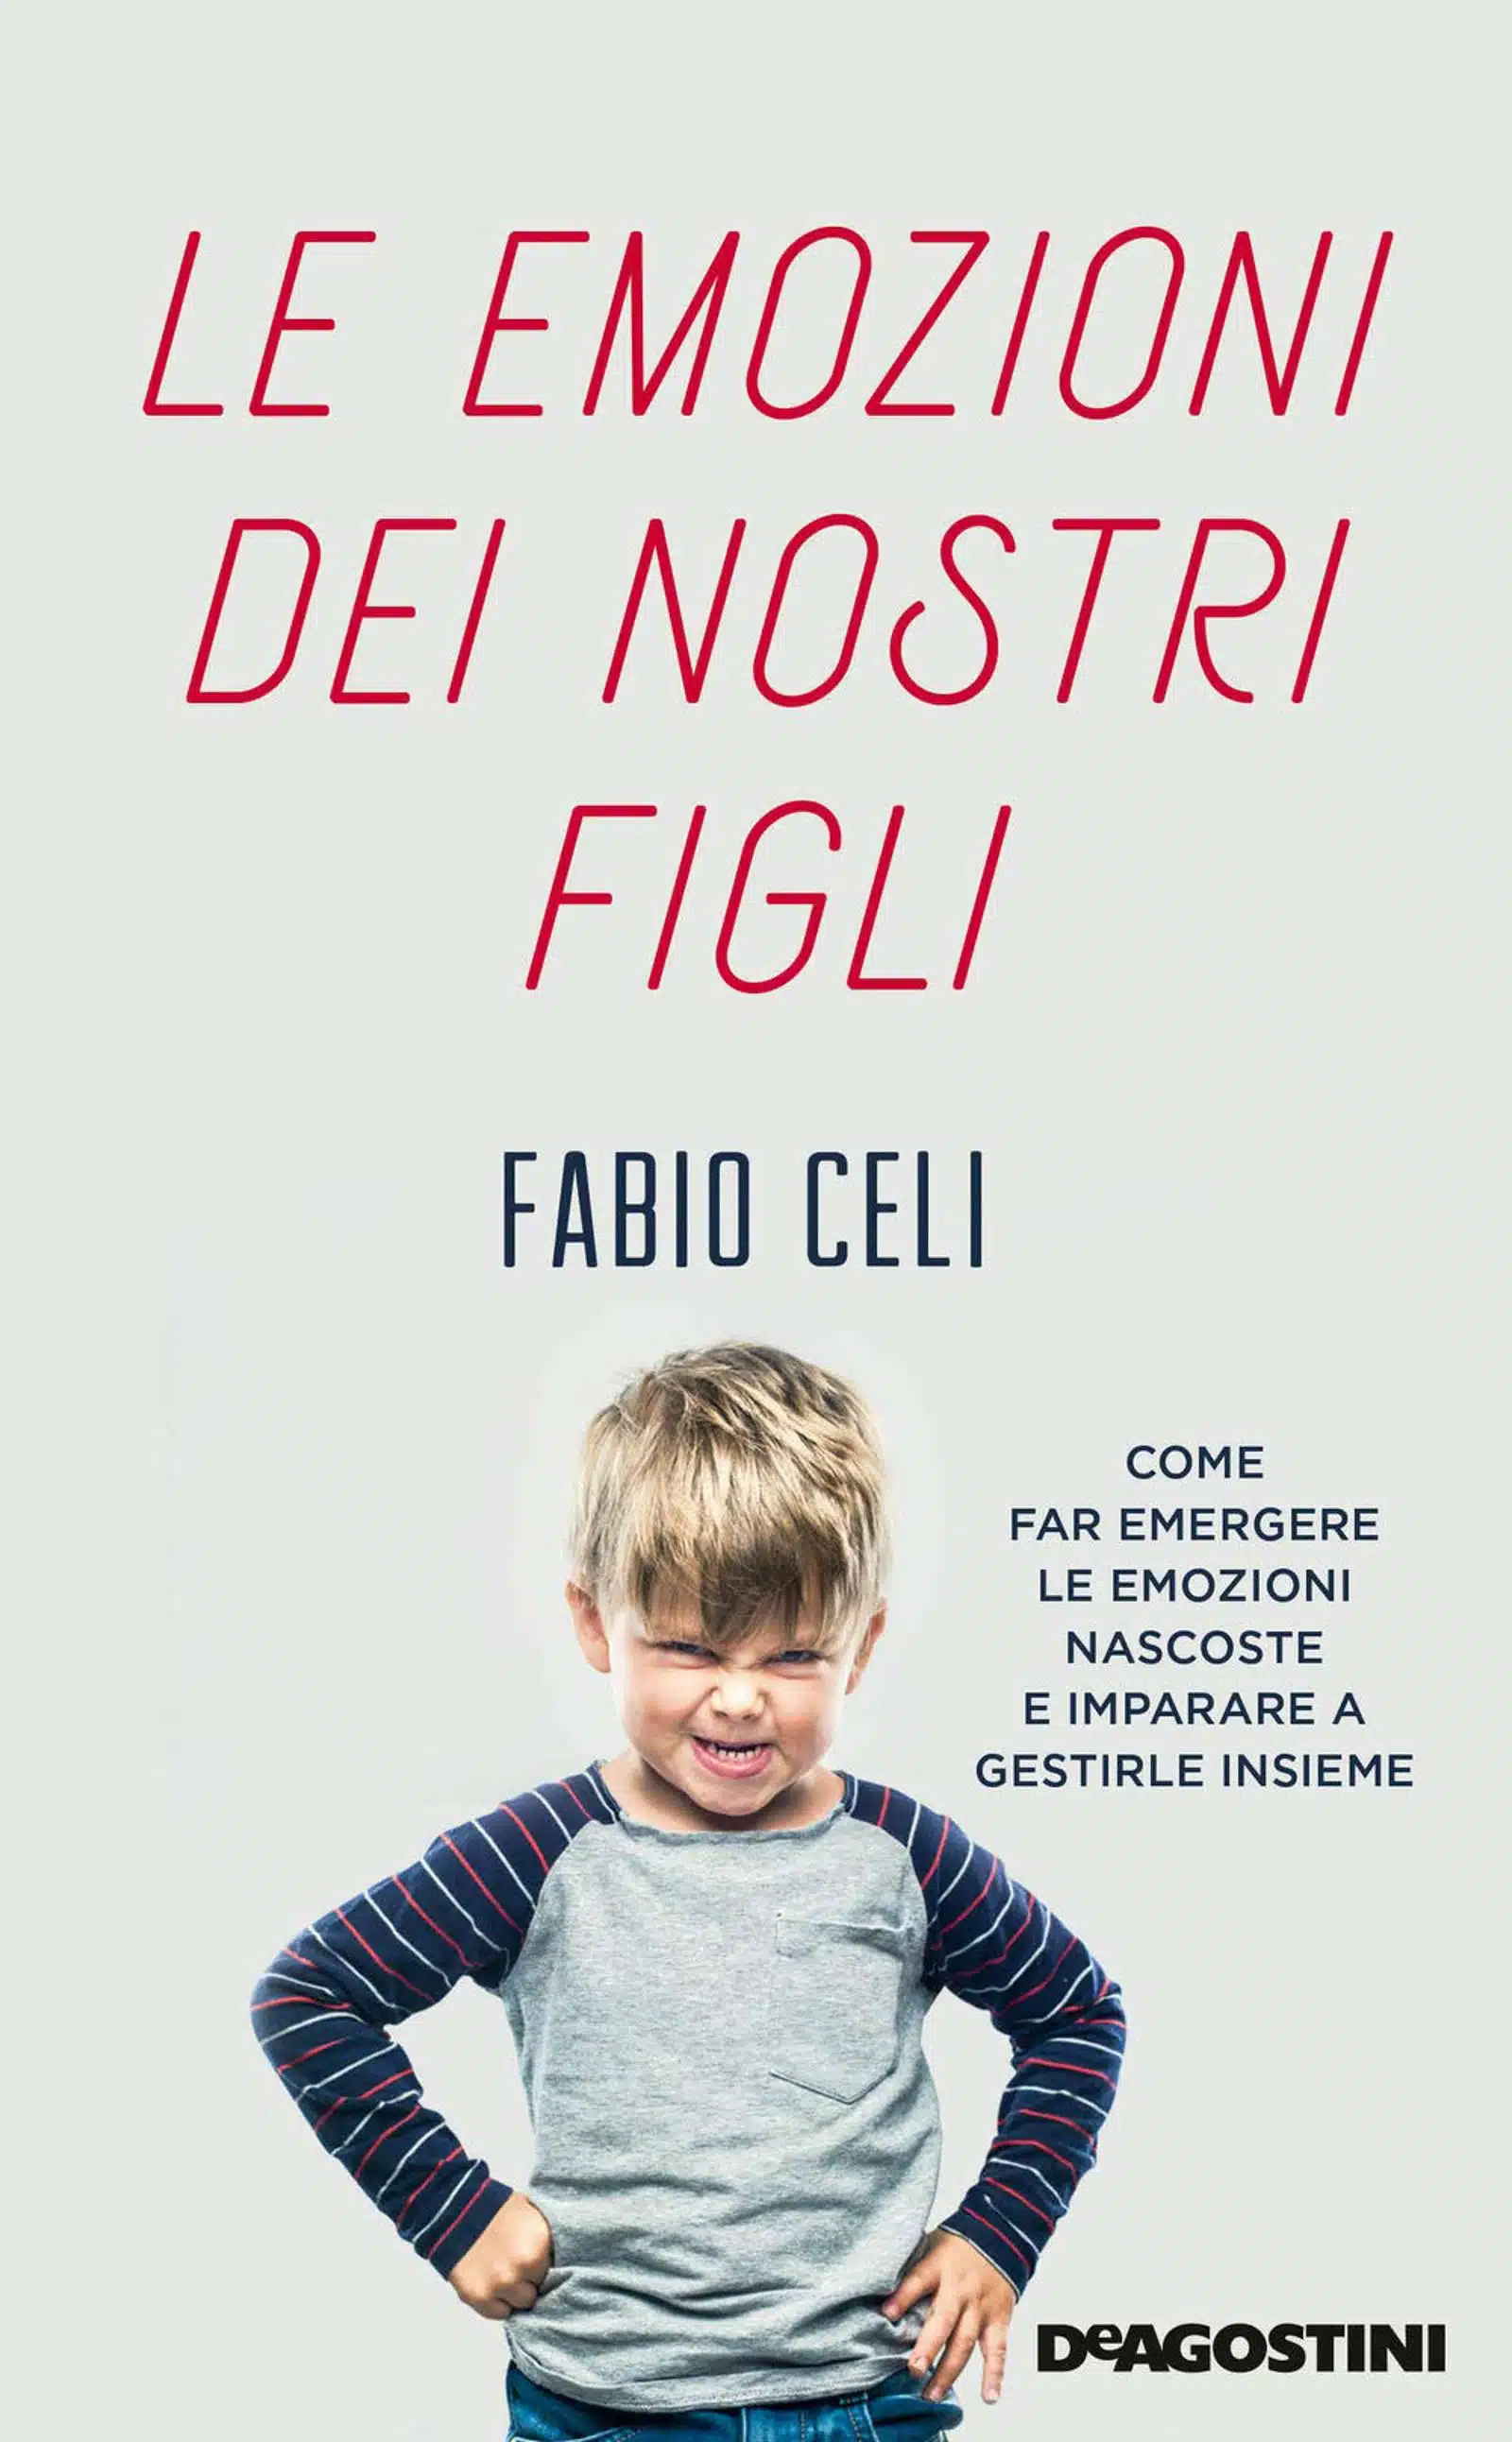 Le emozioni dei nostri figli 2020 di Fabio Celi Recensione del libro Featured